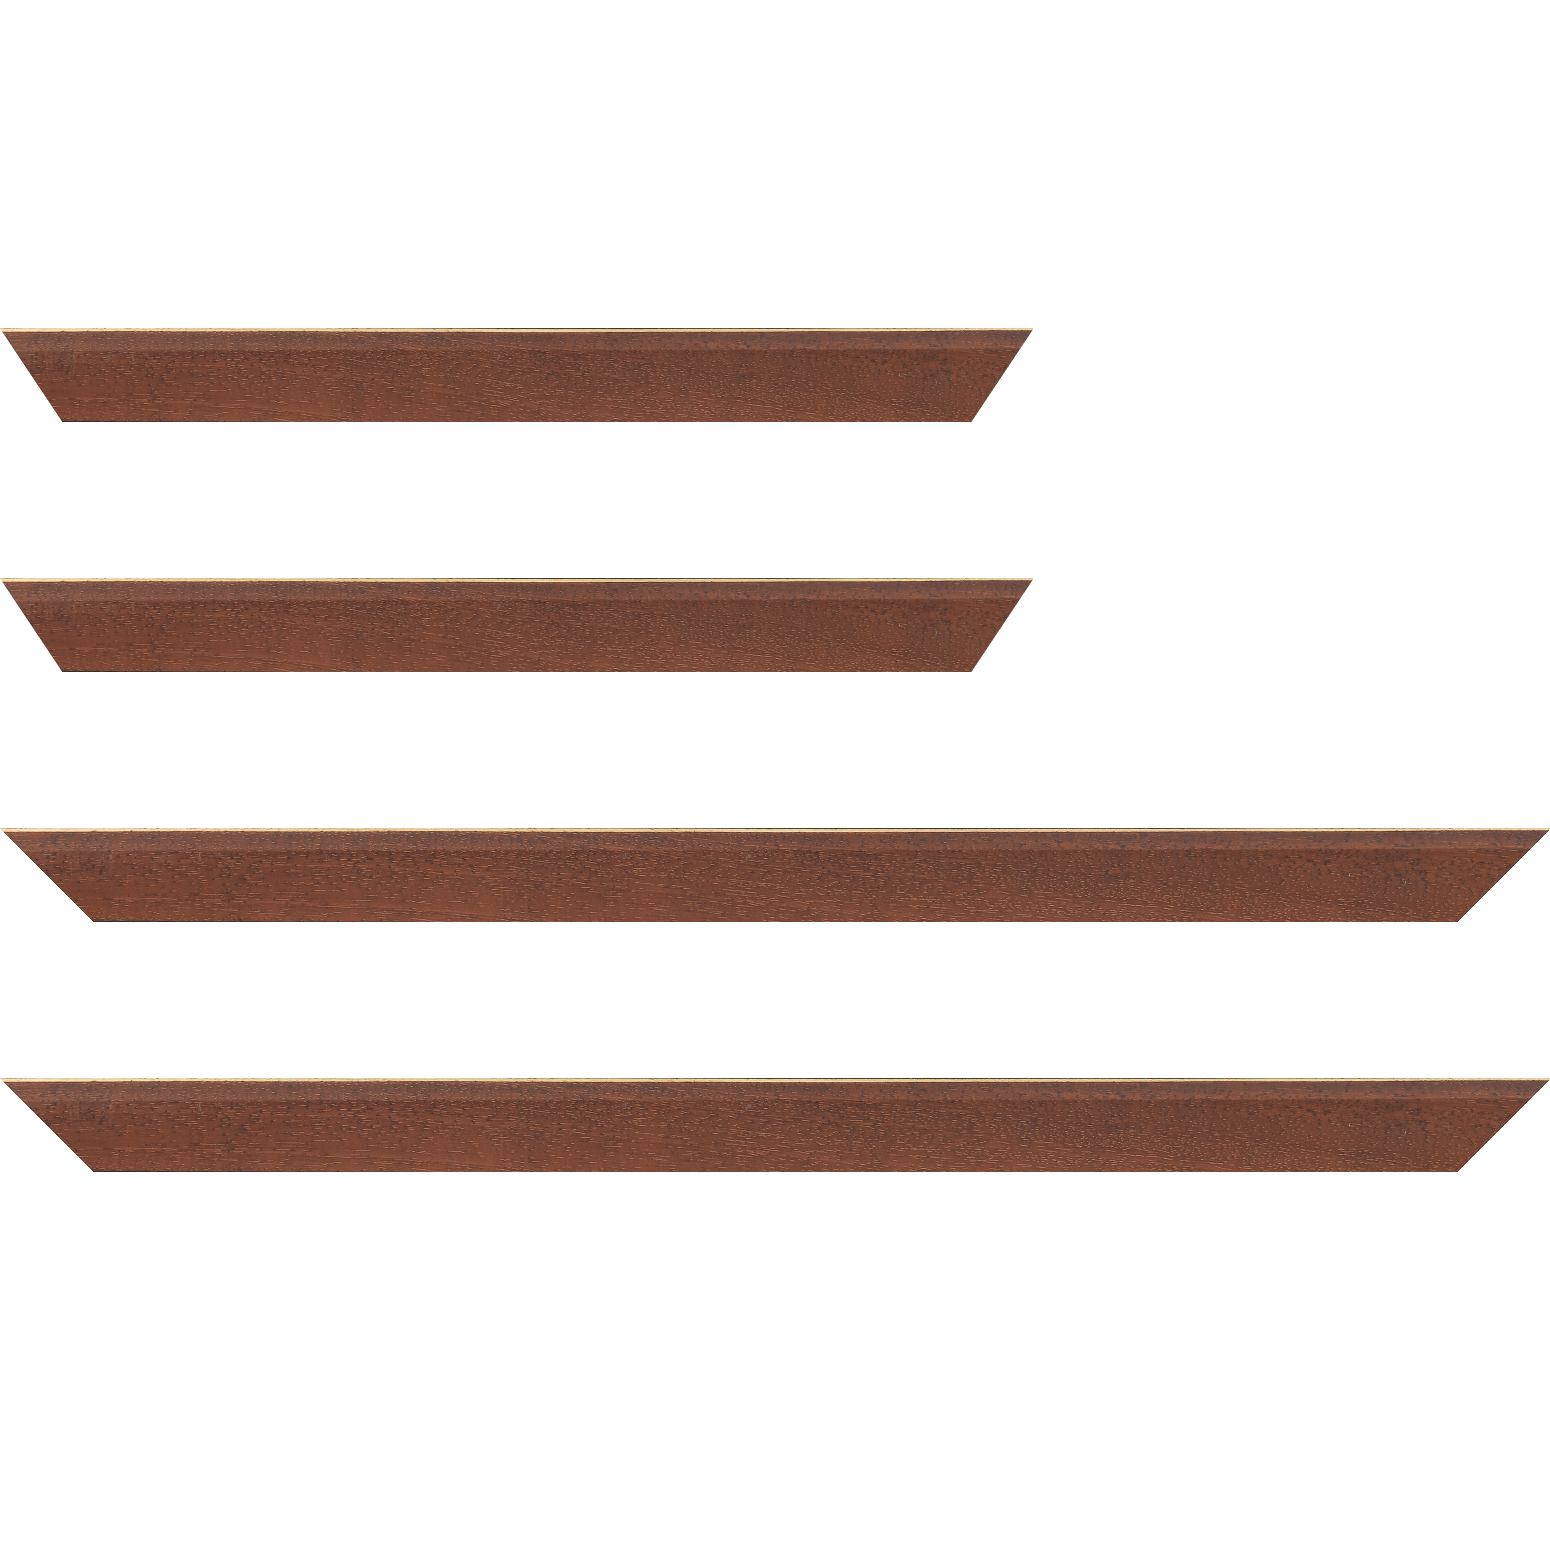 Baguette bois profil plat escalier largeur 3cm couleur marron miel satiné filet créme extérieur - 34x40